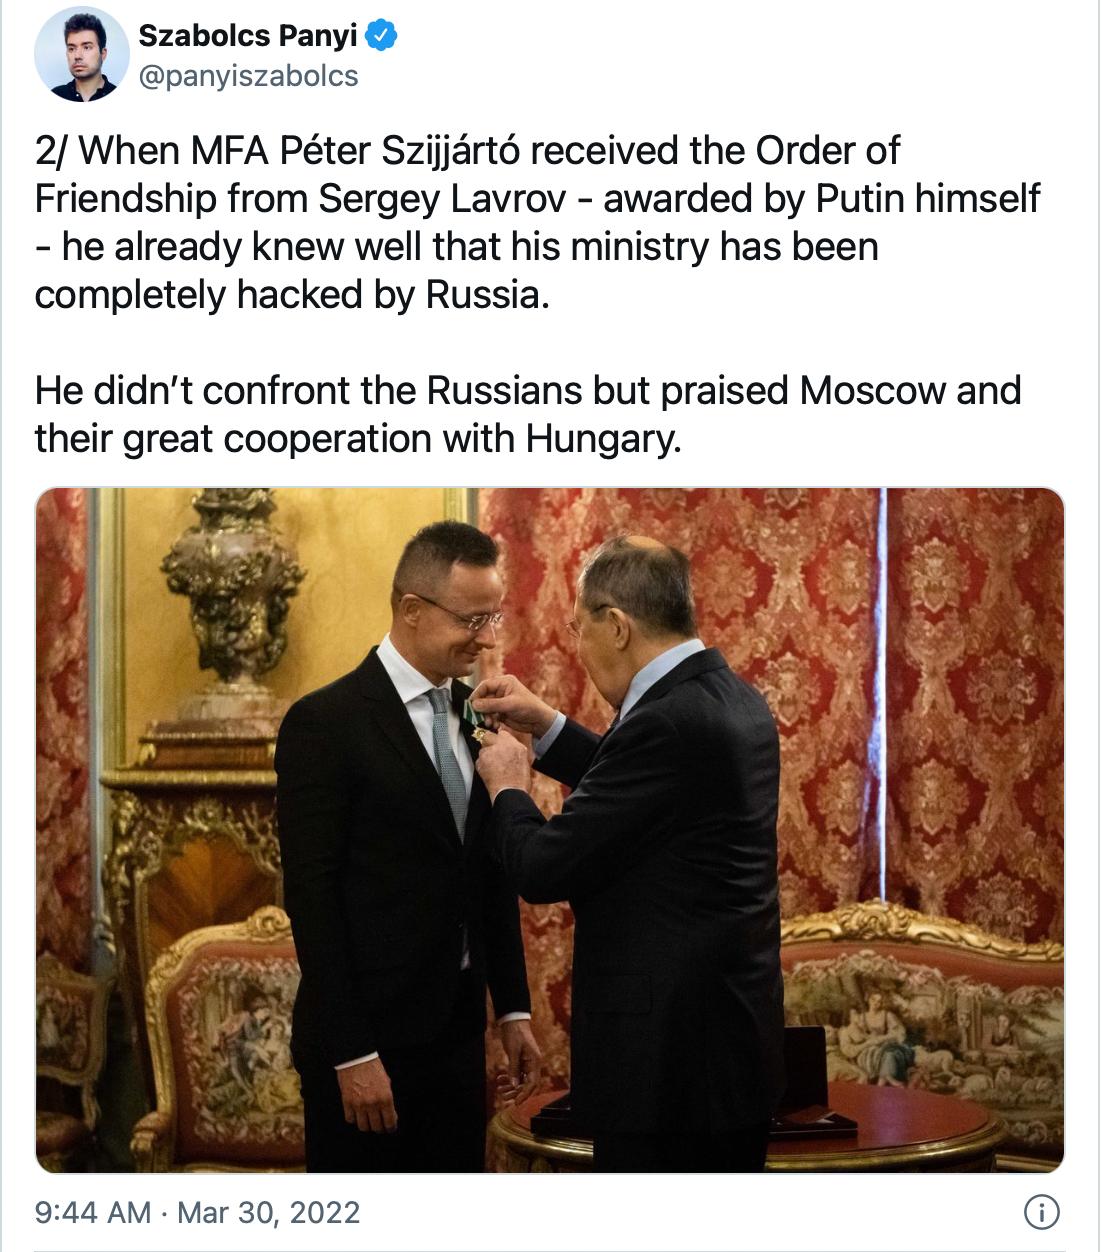 tweet węgierskiego dziennikarza przedstawiający zdjęcie z wręczenia Orderu Przyjaźni szefowi węgierskiego MSZ